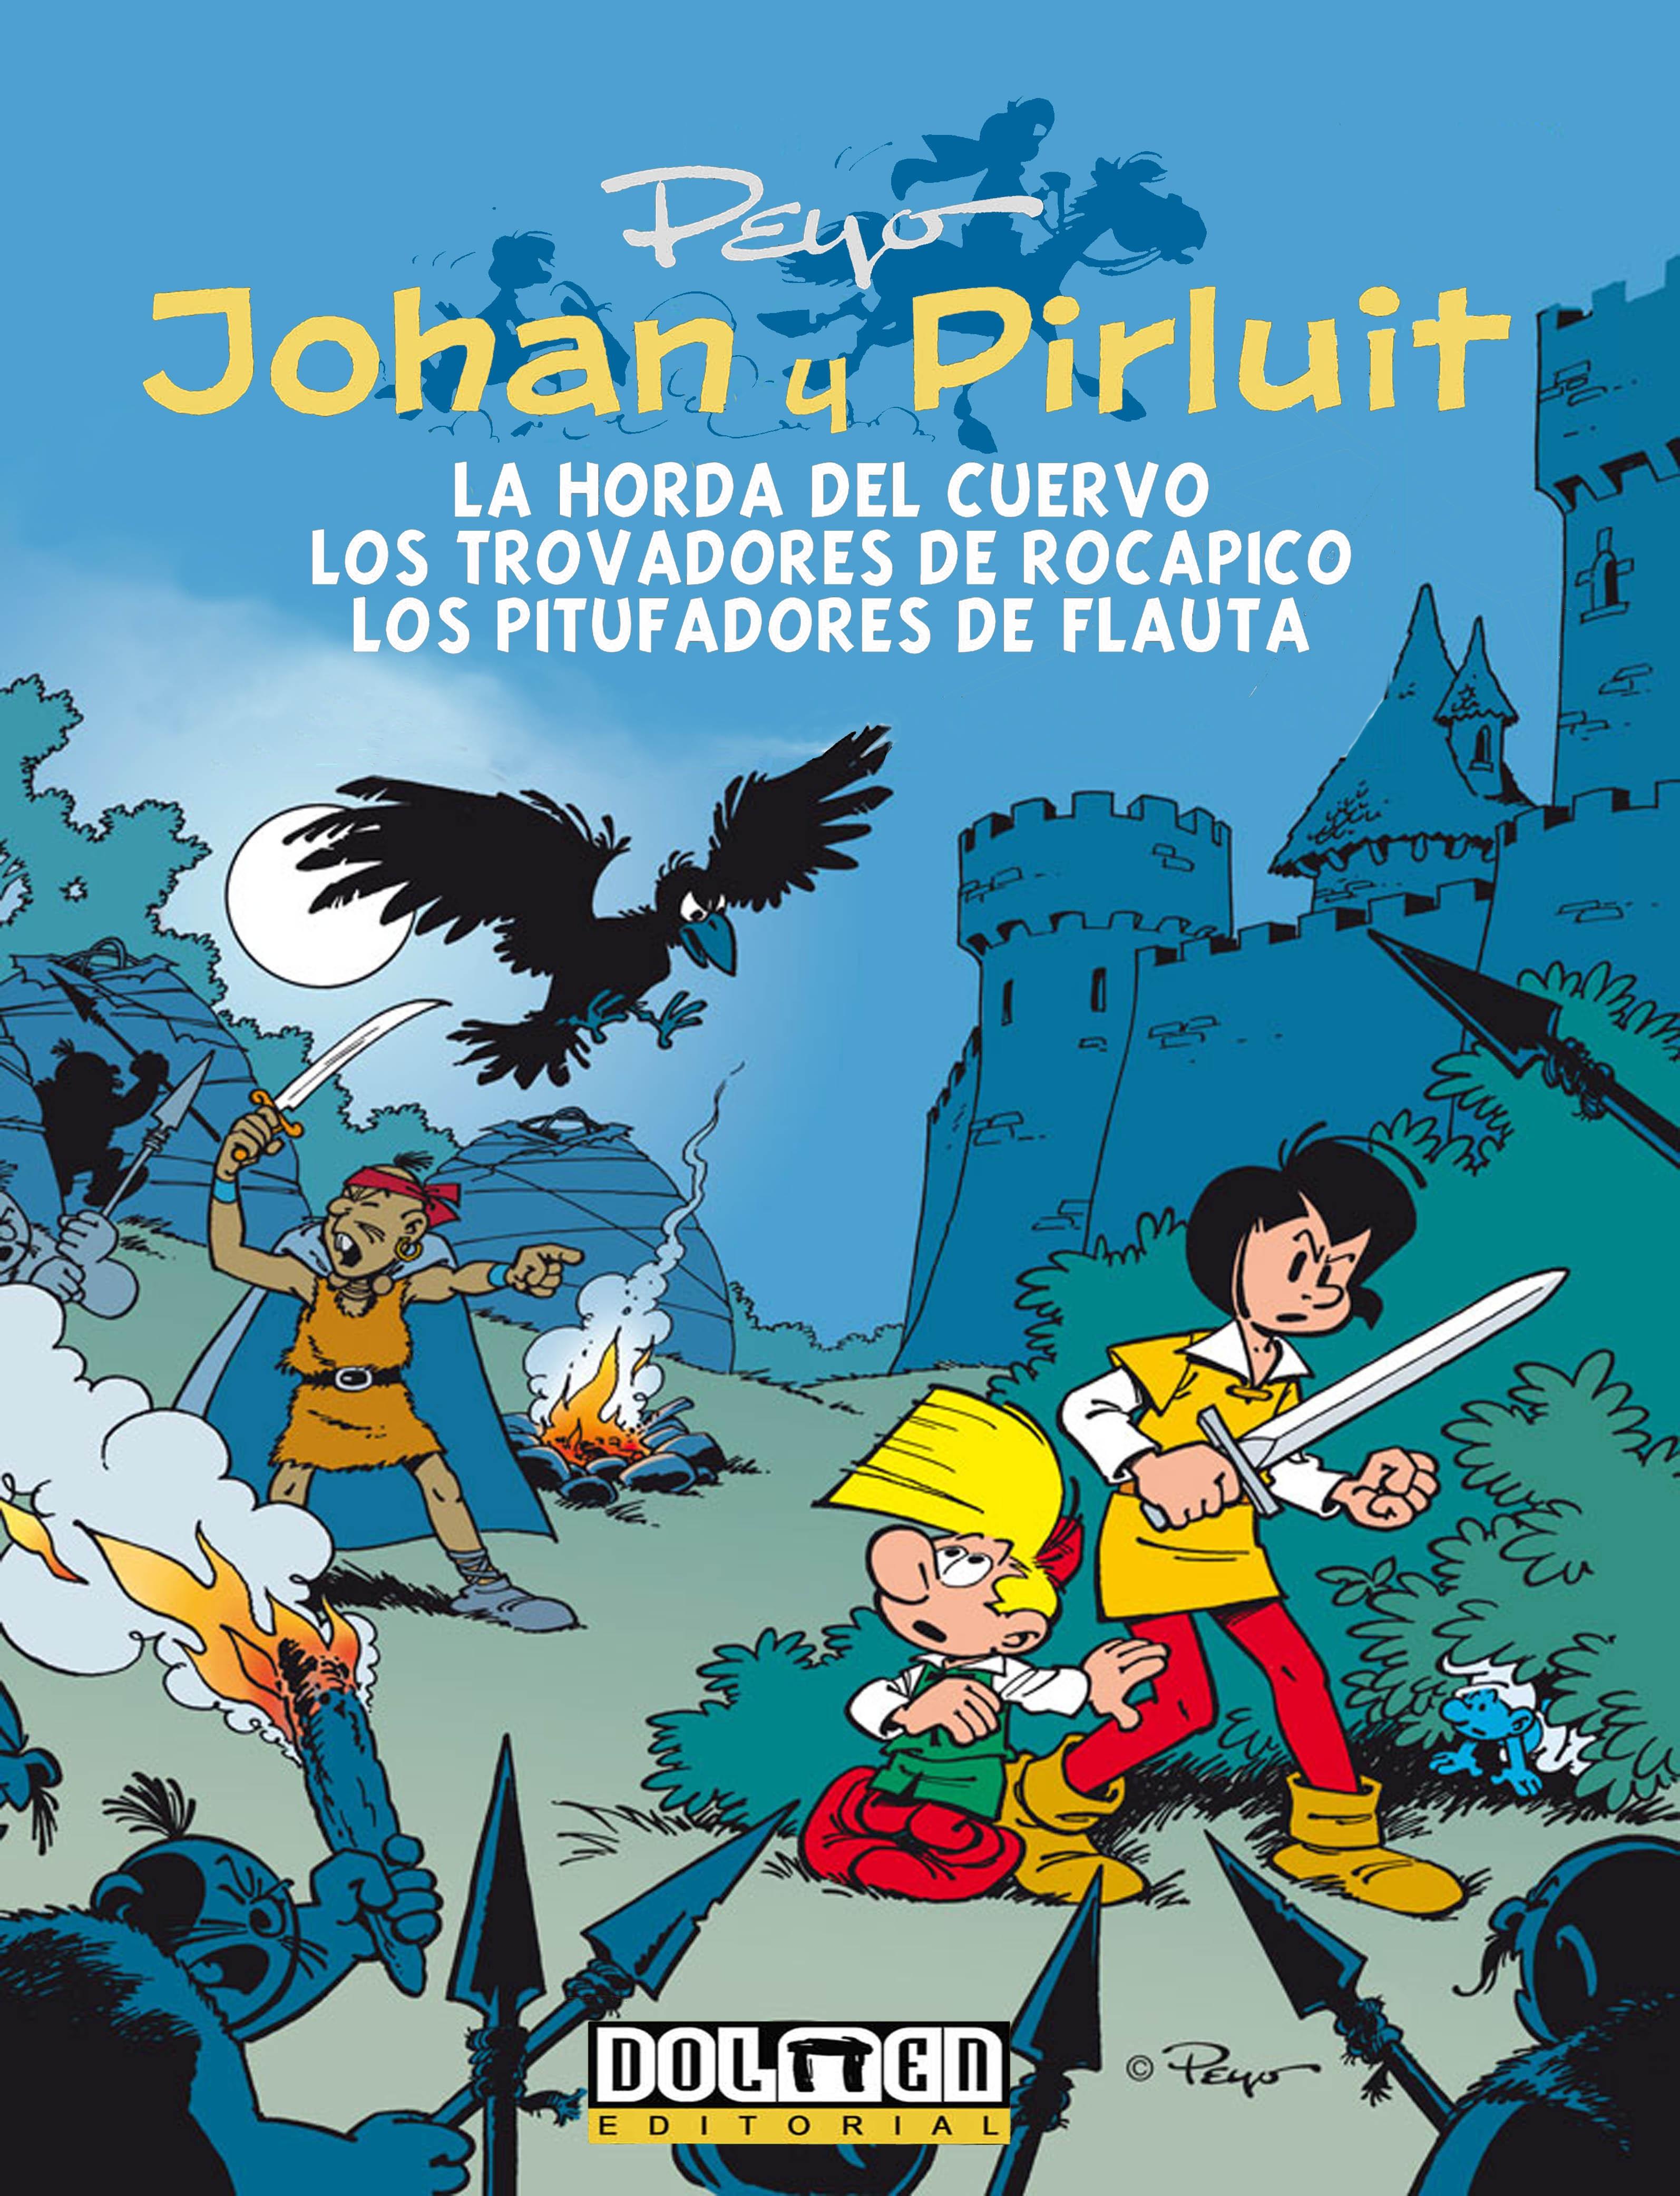 Johan y Pirluit Vol. 6 "La Hora del Cuervo, los Trovadores de Rocapico, los Pitufadores de Flaut". 